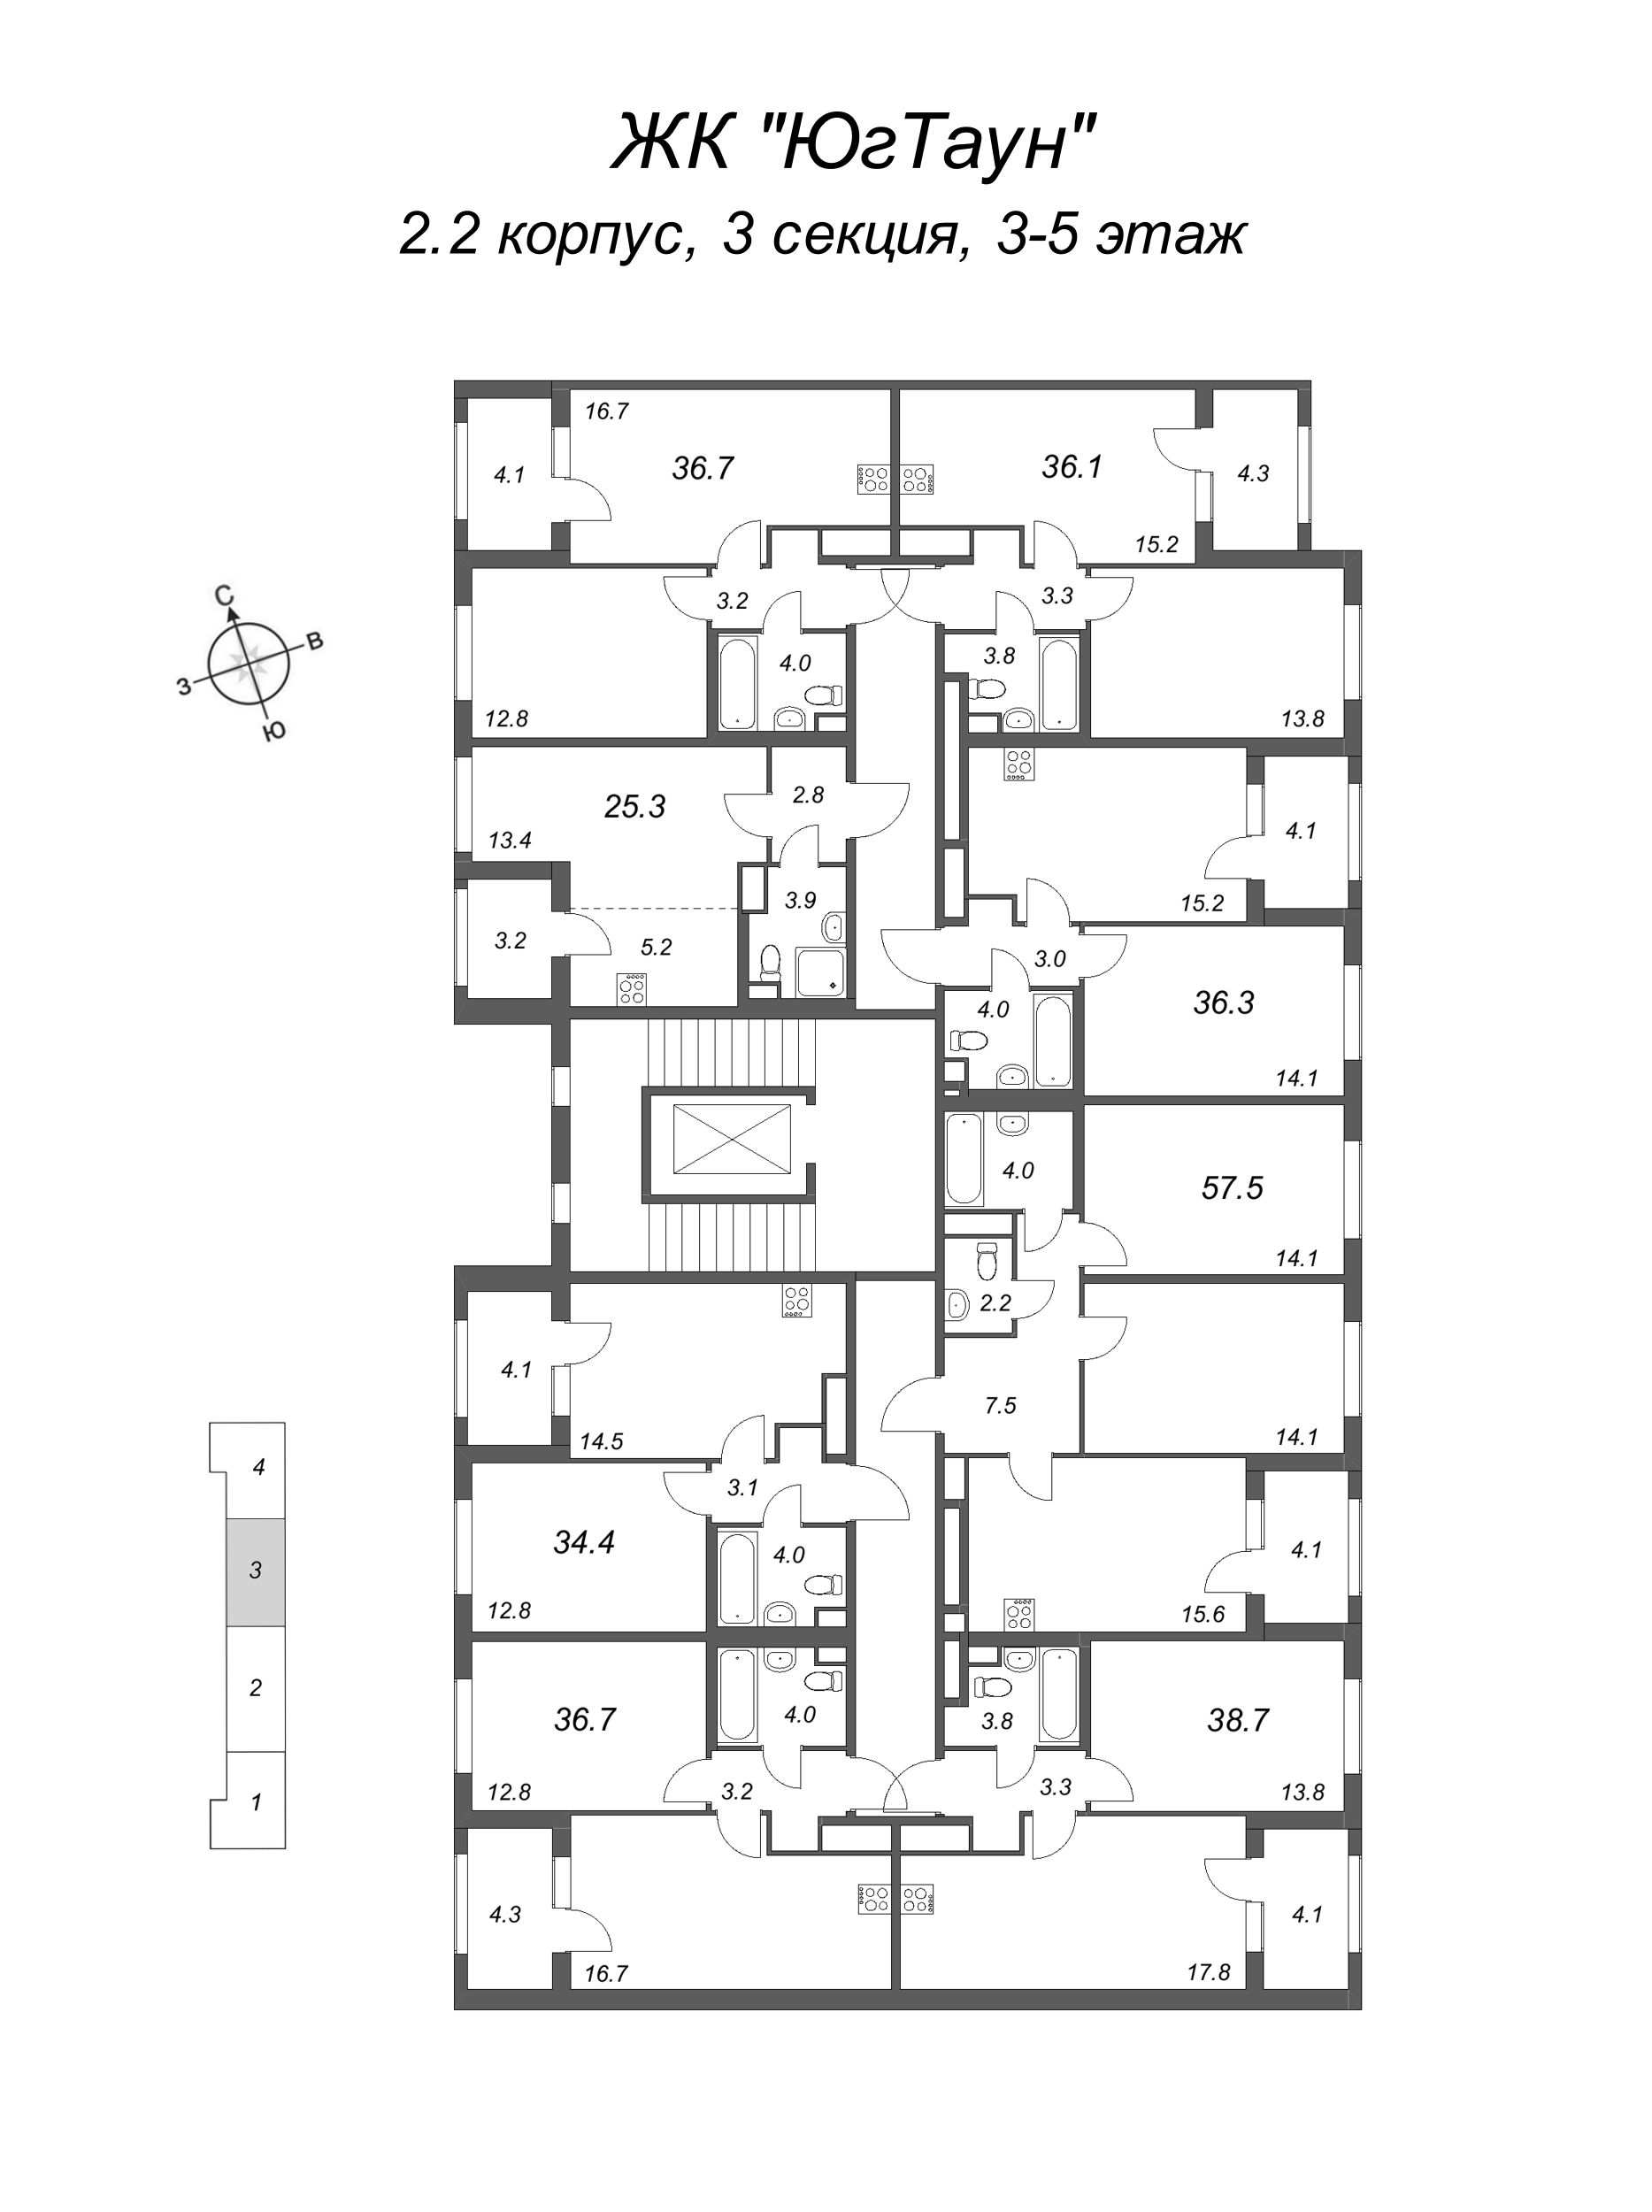 2-комнатная (Евро) квартира, 36.1 м² в ЖК "ЮгТаун" - планировка этажа